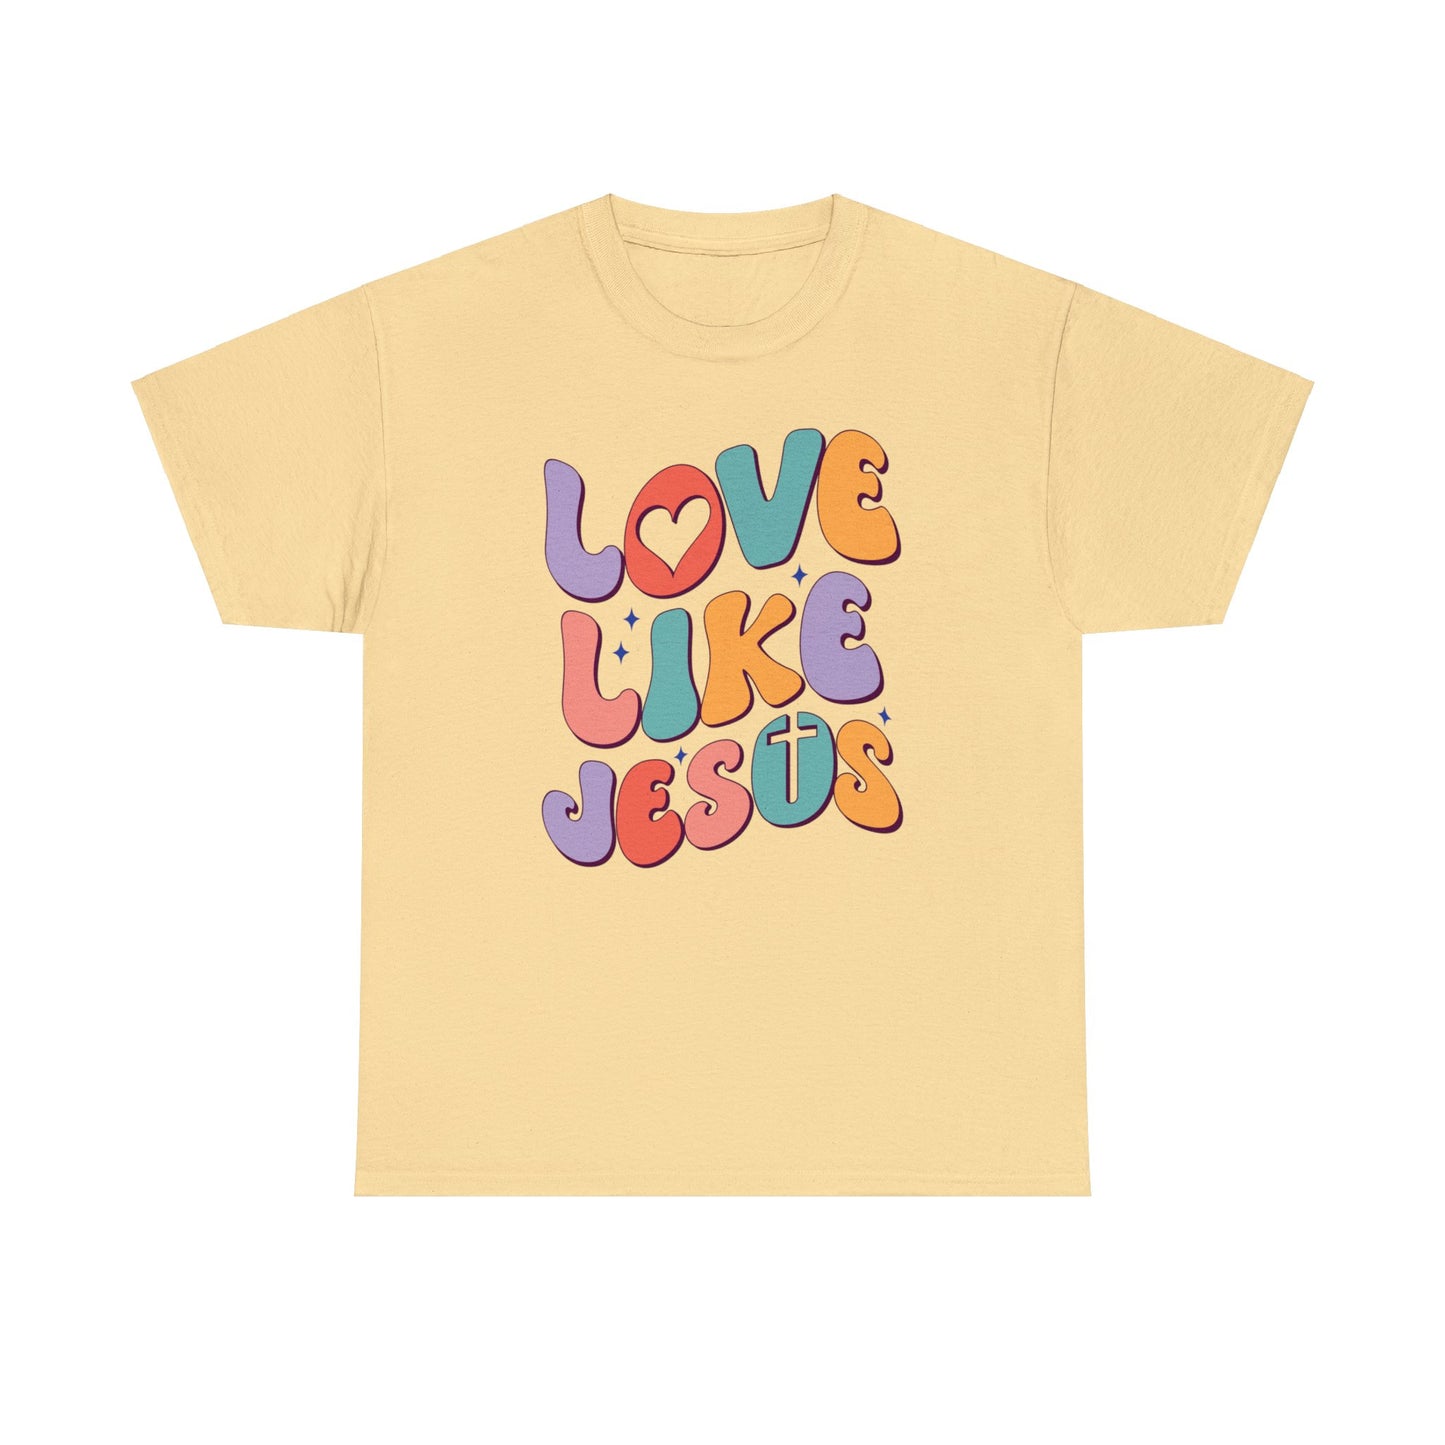 Love Like Jesus Shirt, Christian Shirt, Religious Shirt, Faith Tee (Faith-2)